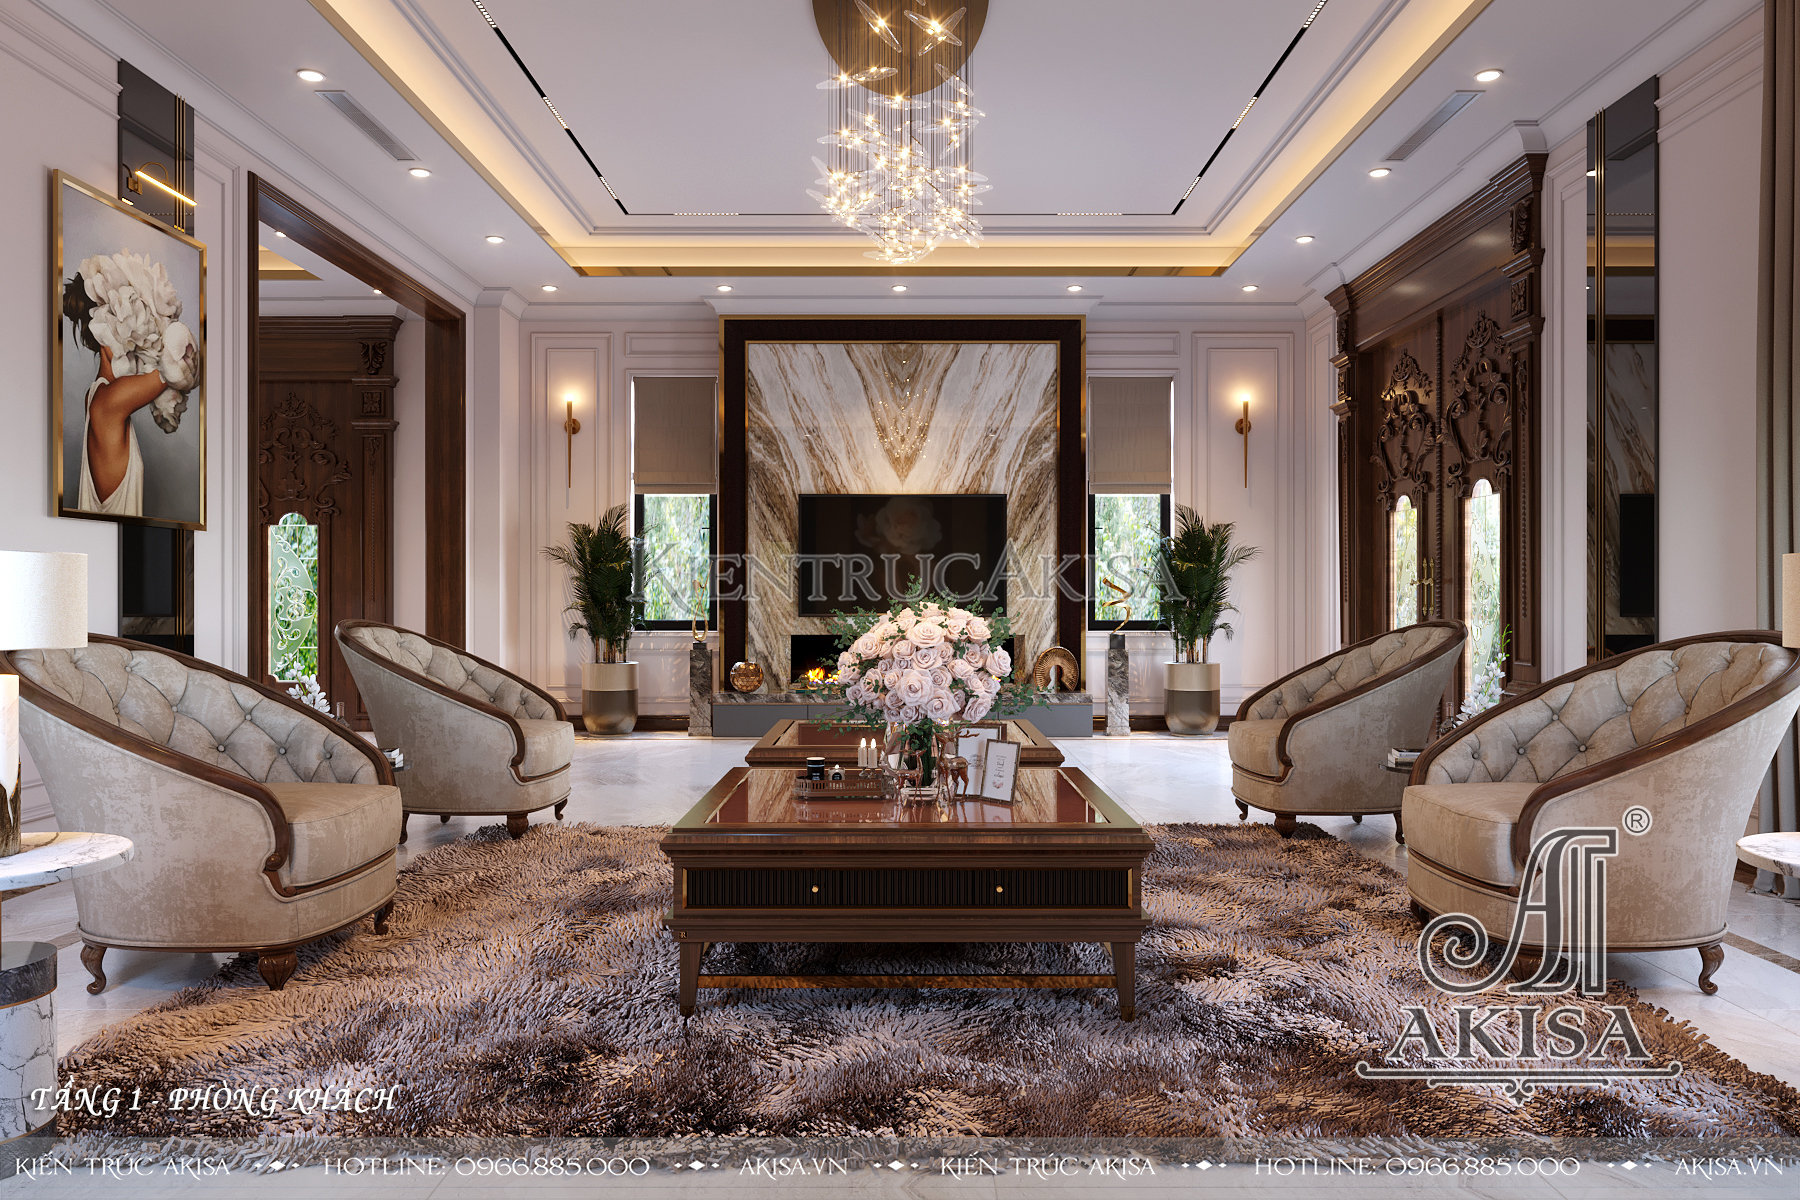 Mẫu thiết kế nội thất biệt thự phong cách luxury - Phòng khách